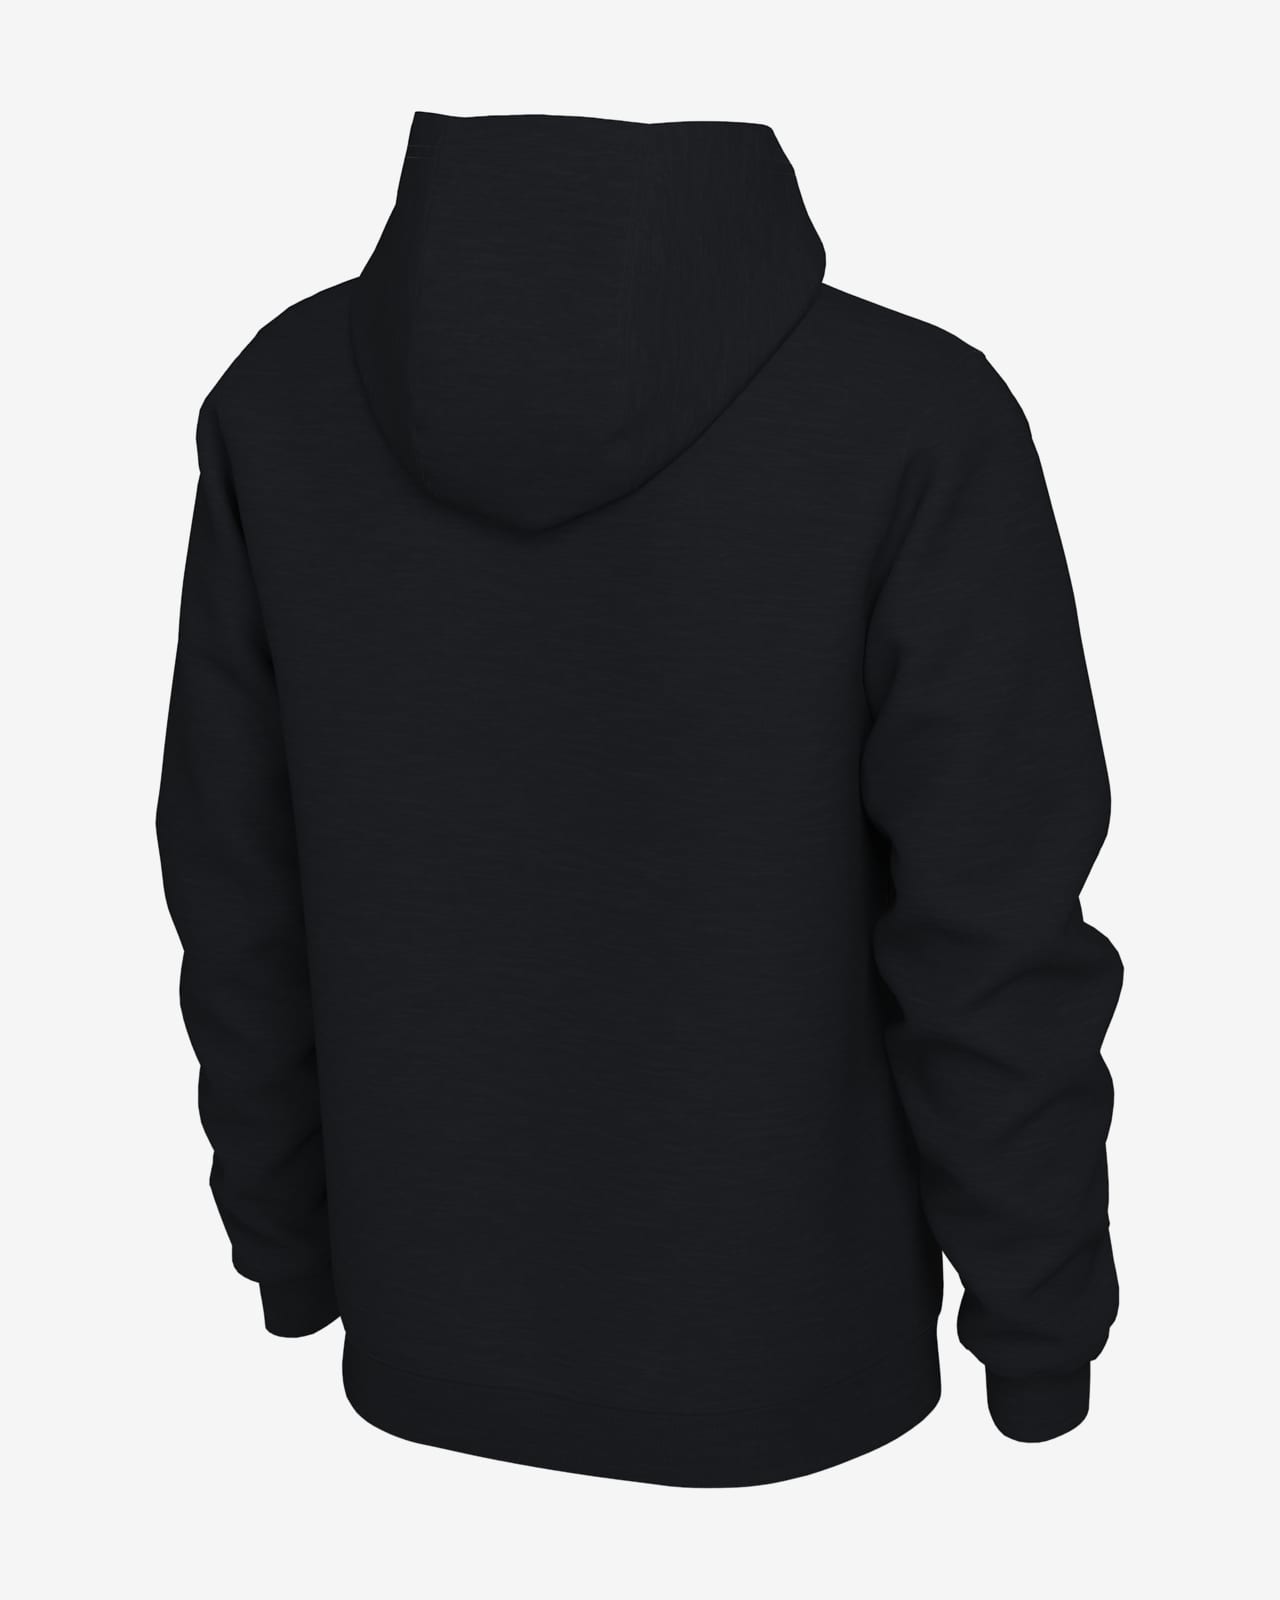 lakers nike hoodie black